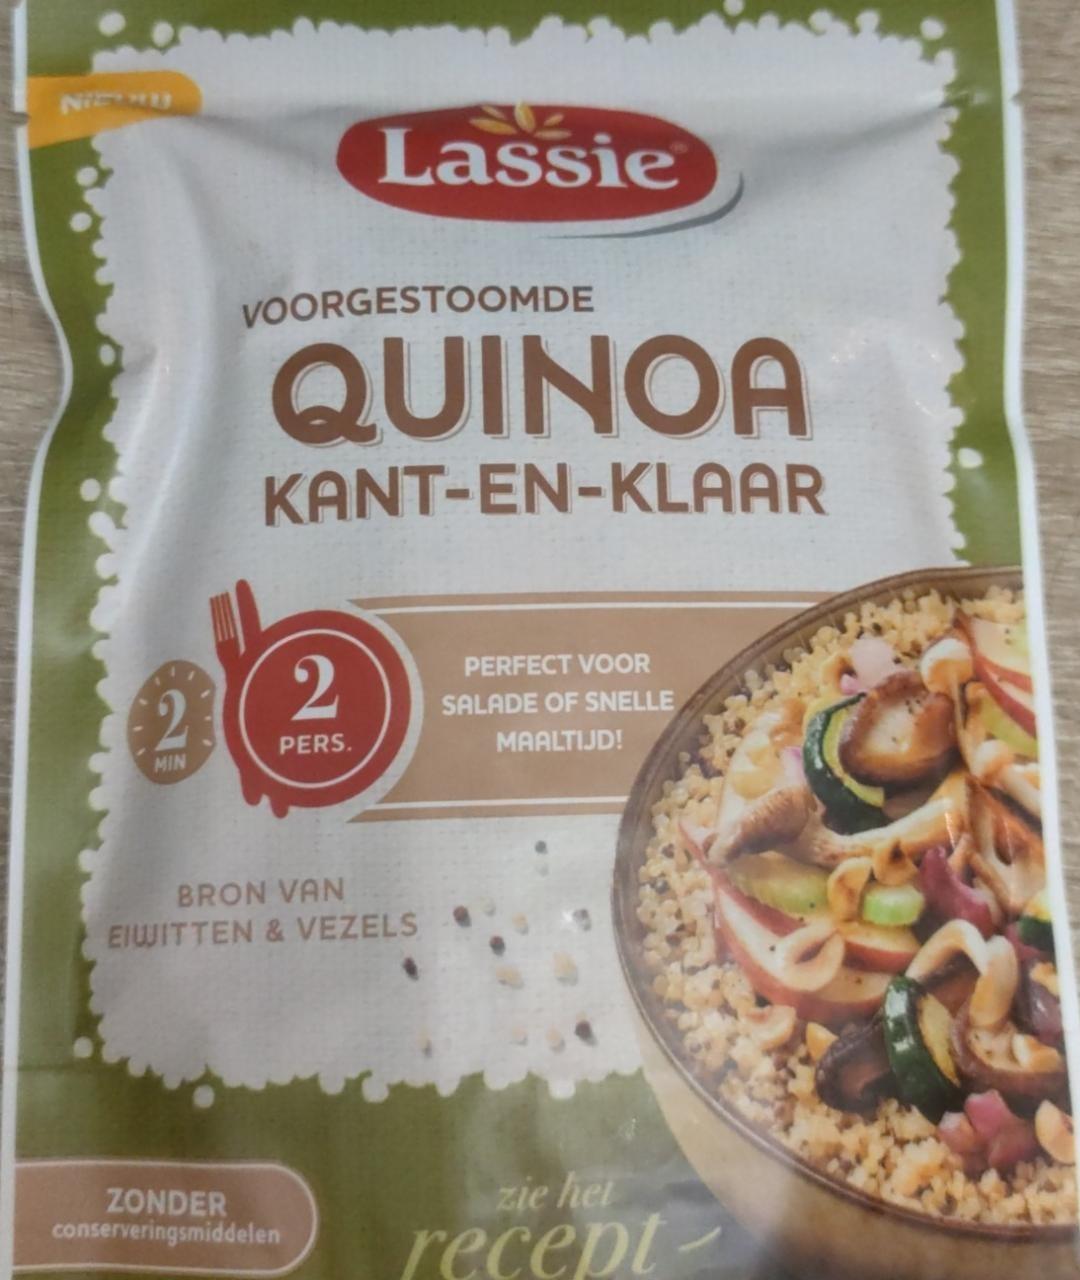 Fotografie - Voorgestoomde Quinoa kant-en-klaar Lassie